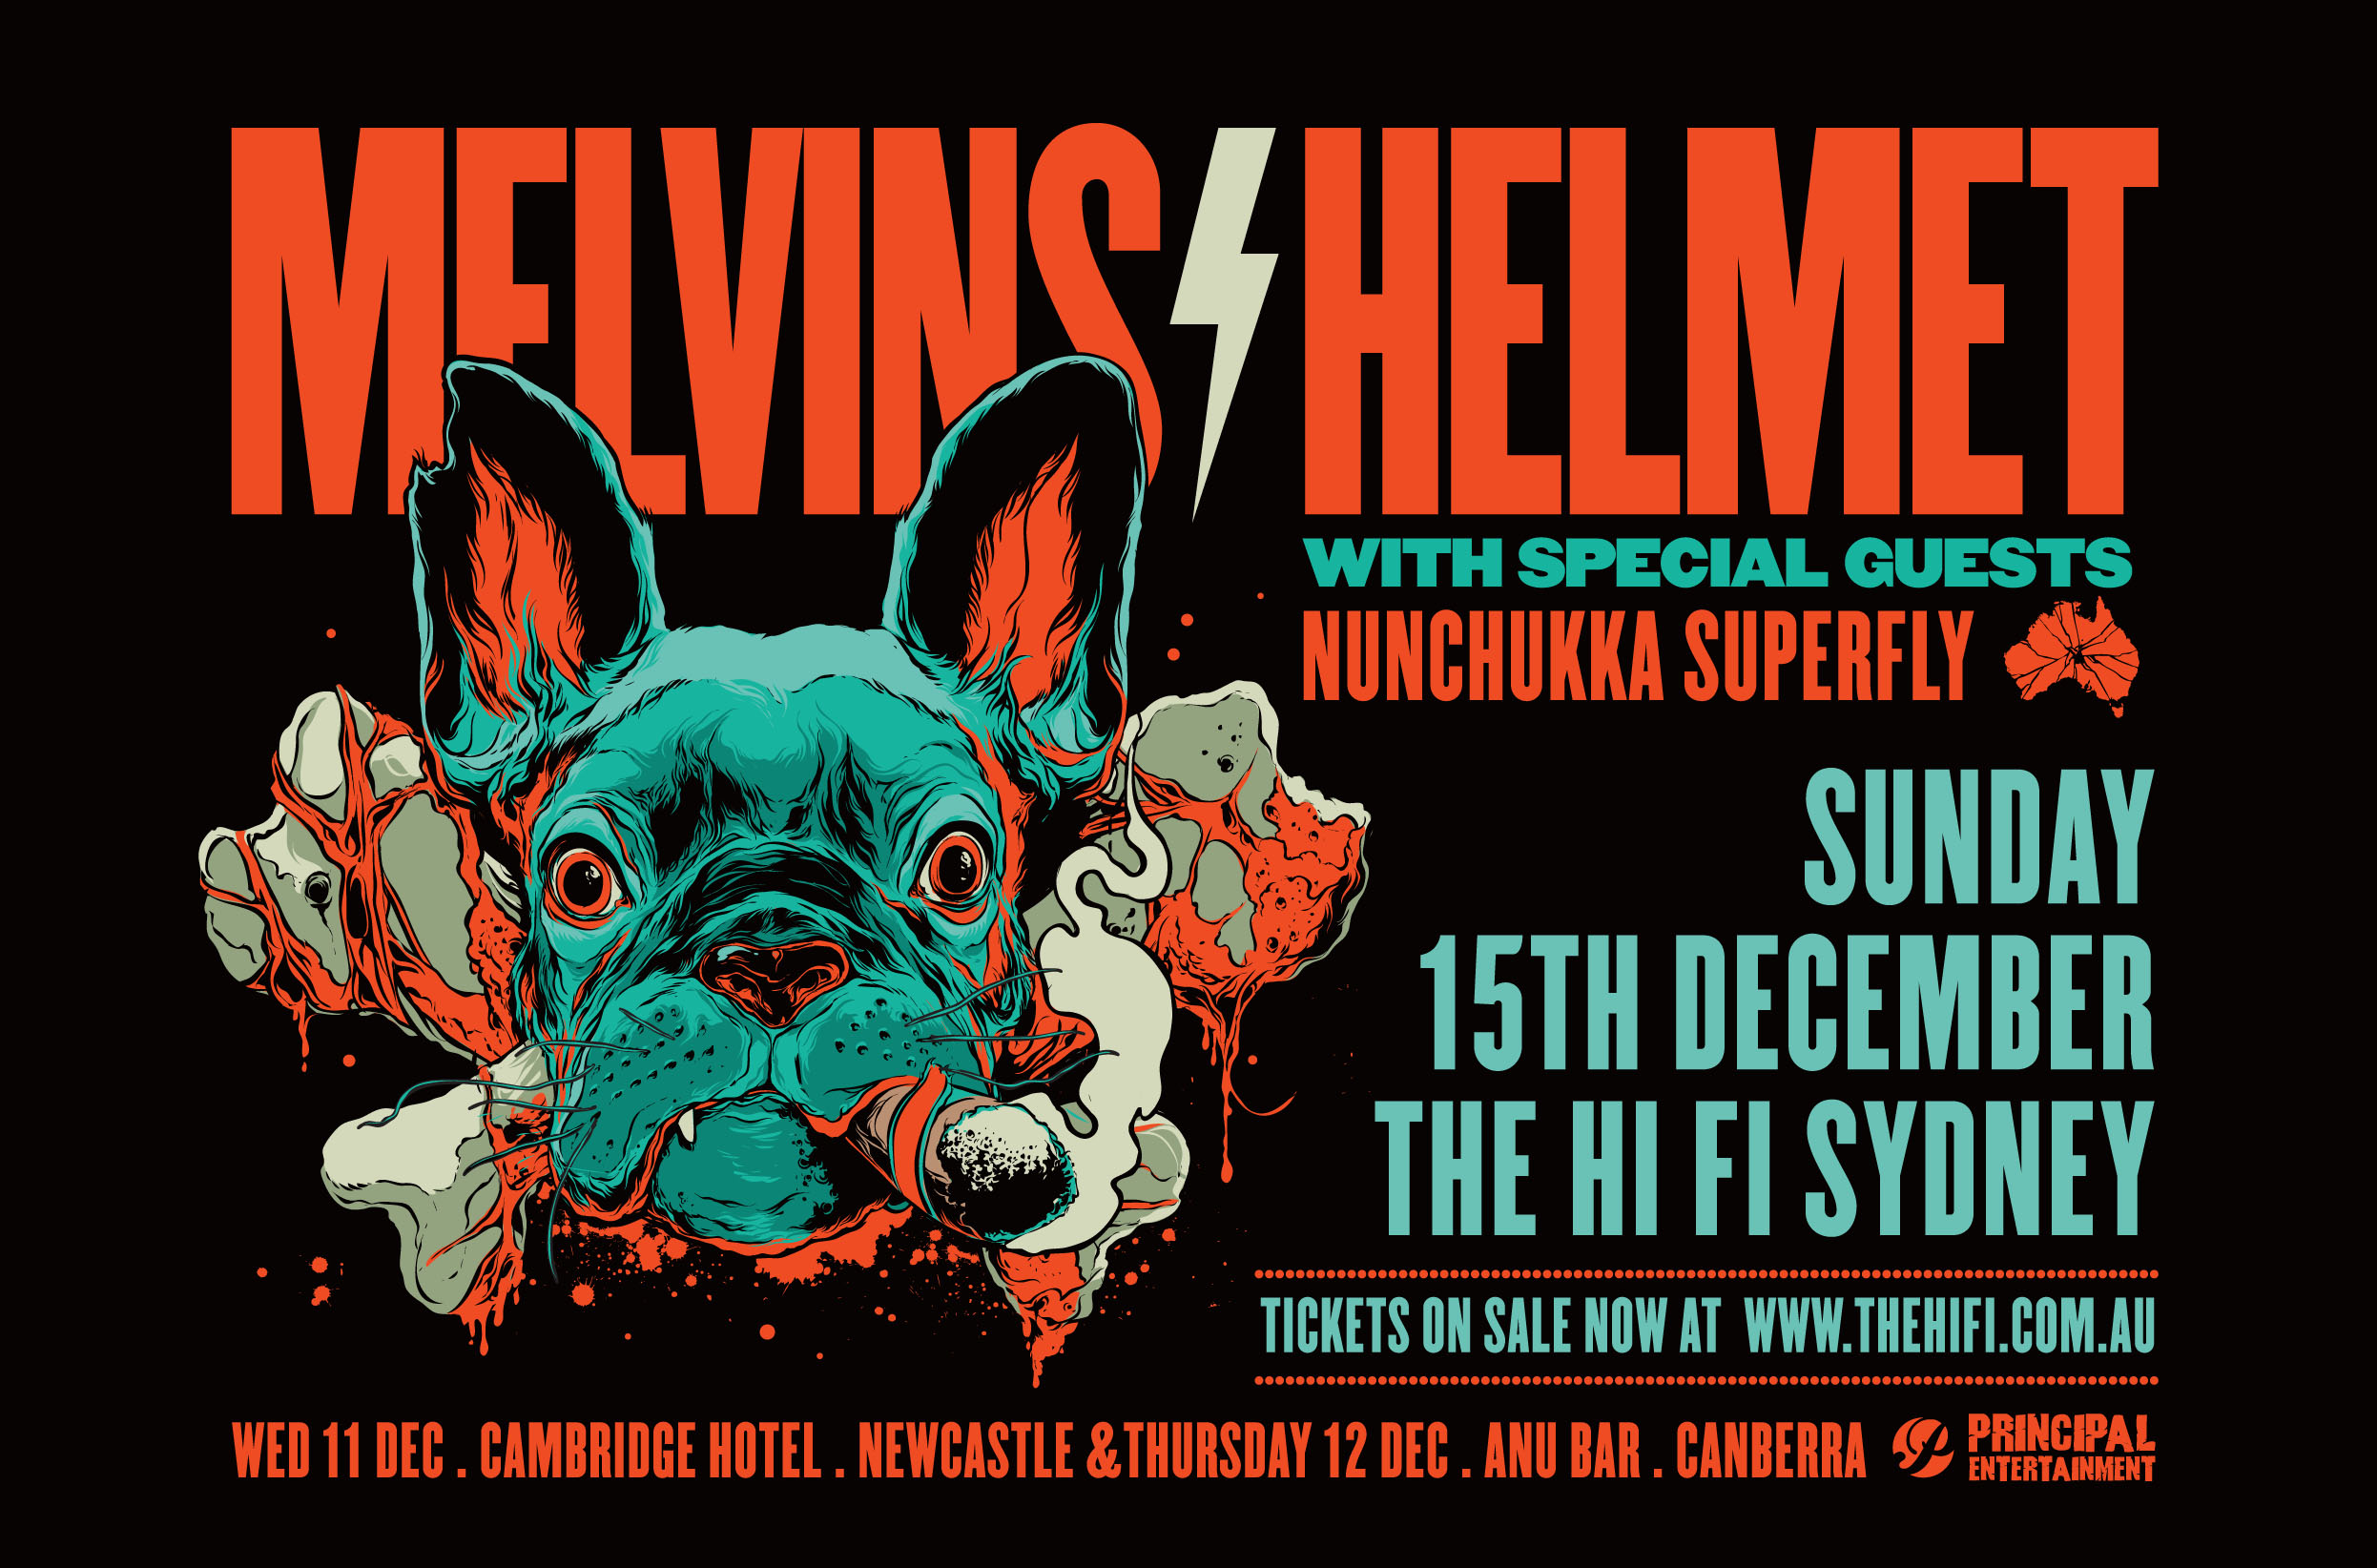 Melvins & Helmet Australian Tour 2013